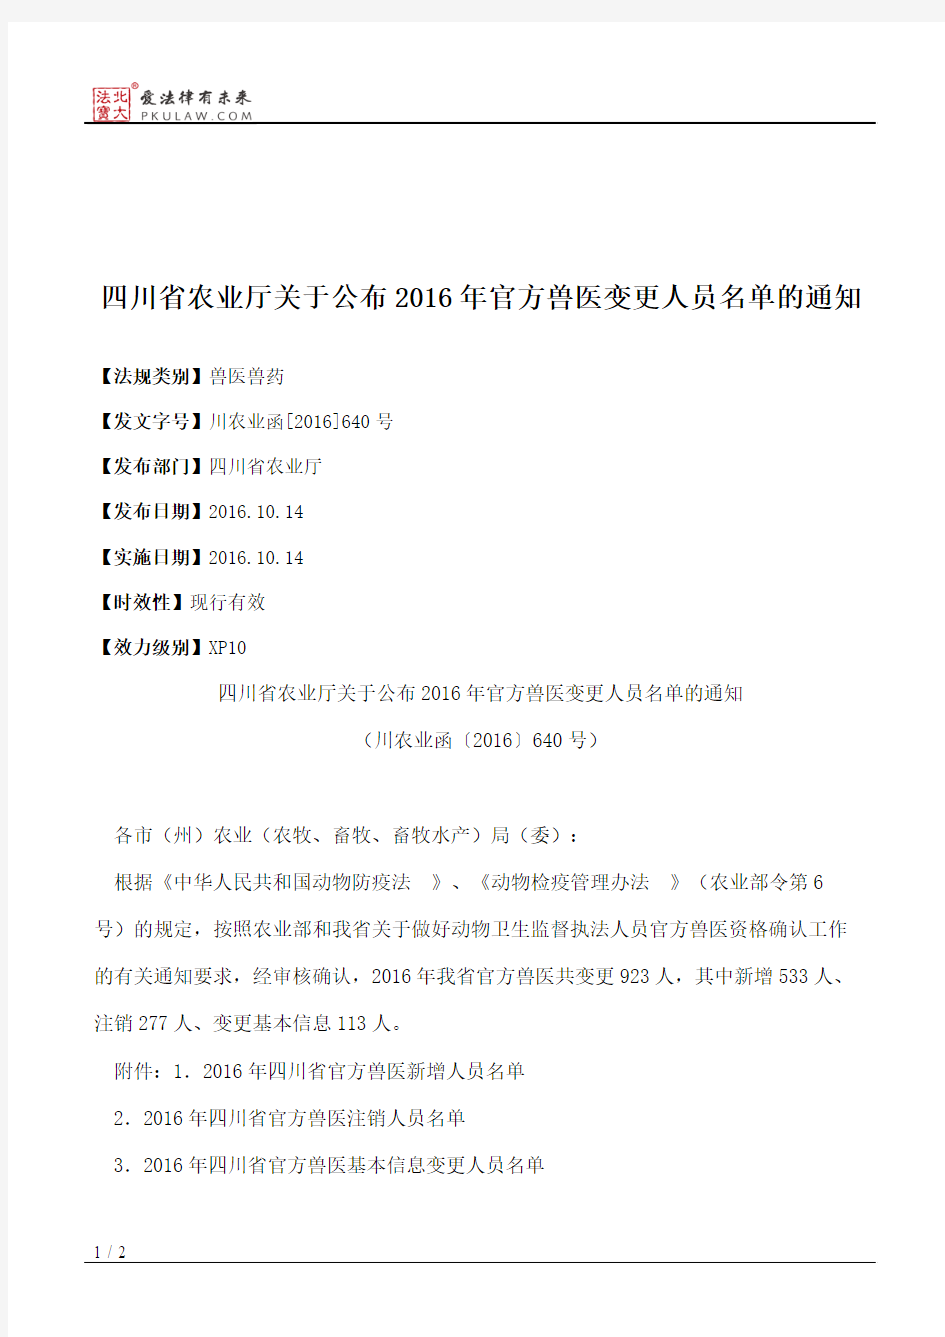 四川省农业厅关于公布2016年官方兽医变更人员名单的通知